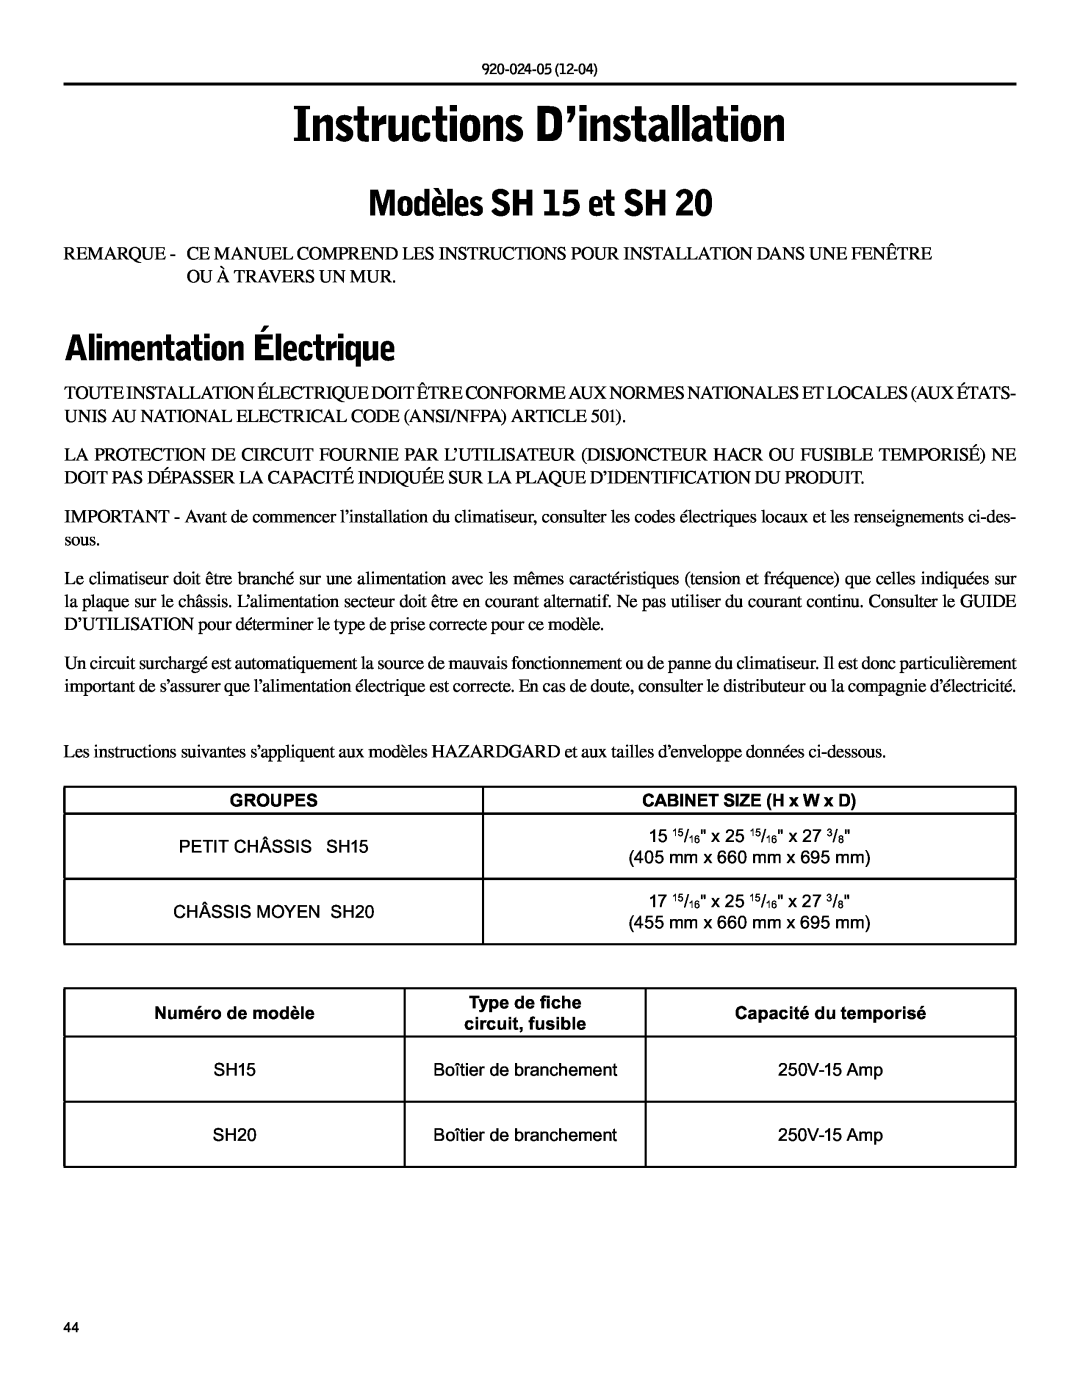 Friedrich SH15, SH20 operation manual Instructions D’installation, Modèles SH 15 et SH, Alimentation Électrique 